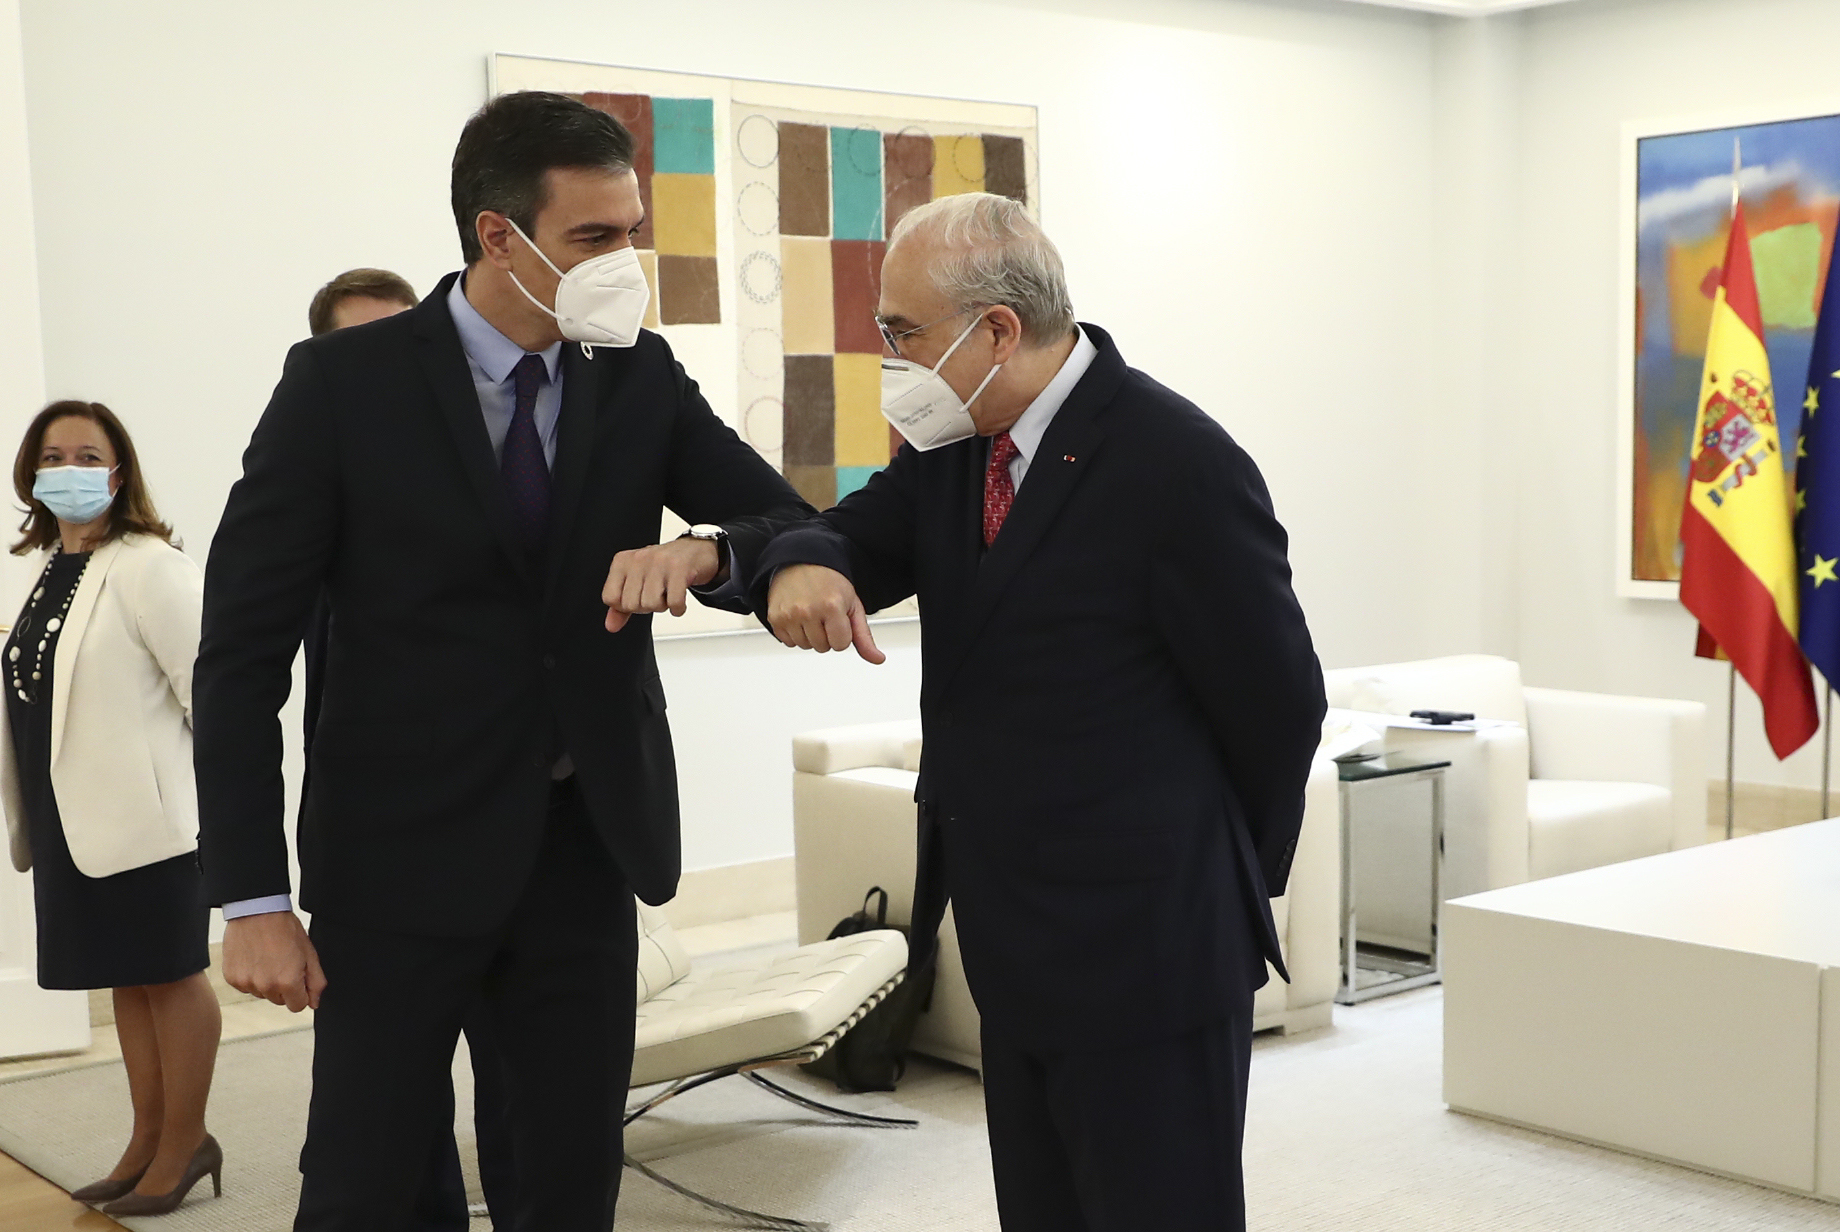 El presidente del Gobierno, Pedro Snchez, saluda al secretario general de la OCDE, ngel Gurra, en un acto del pasado 13 de mayo.